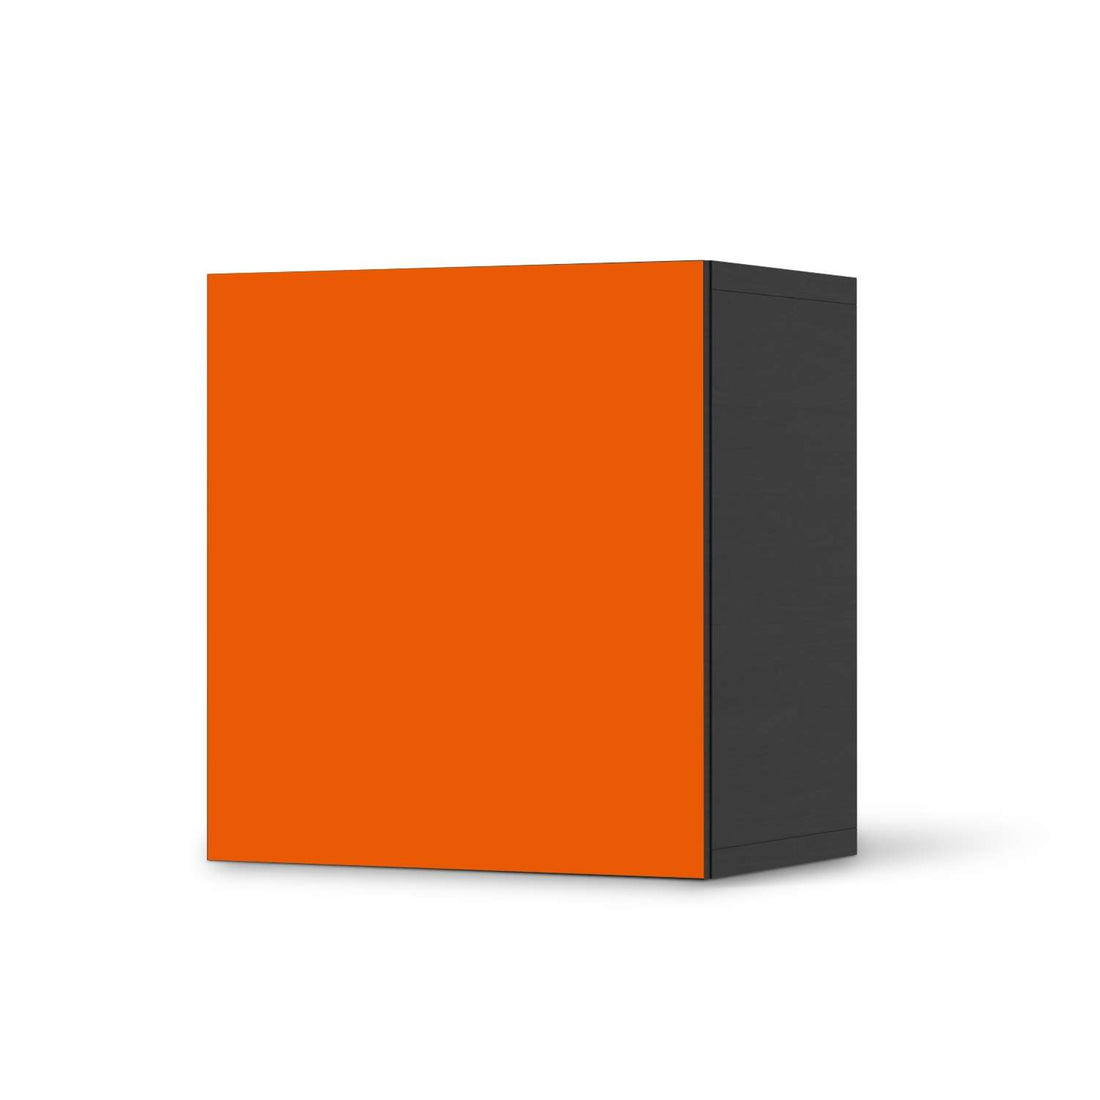 Klebefolie für Möbel Orange Dark - IKEA Besta Regal 1 Türe - schwarz